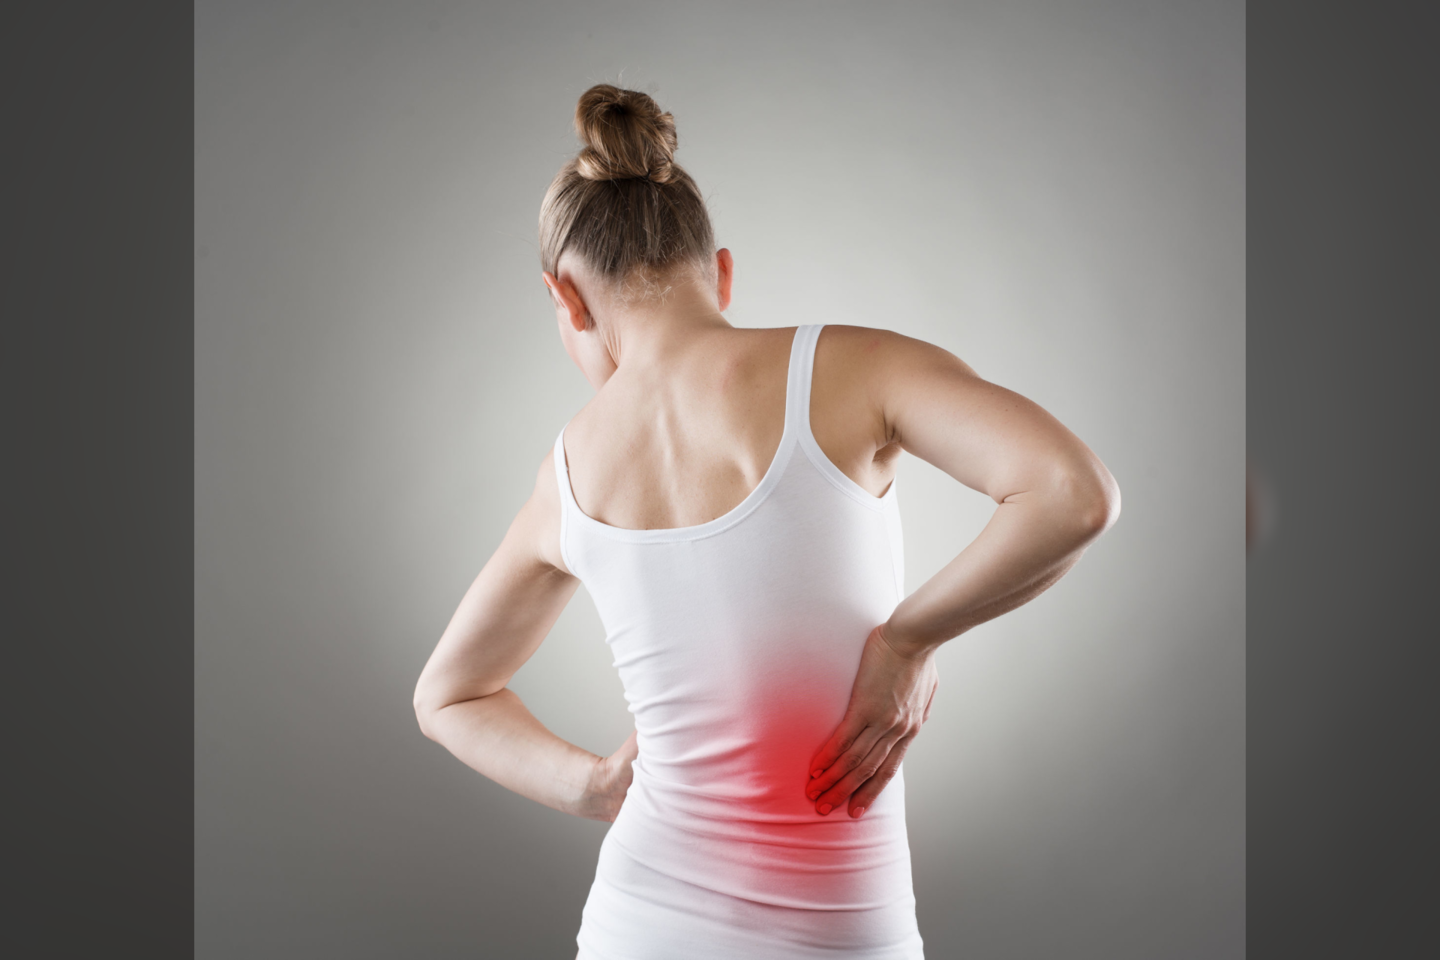  Ūminį skausmą įprastai sukelia staiga patempti raumenys, raiščiai, sausgyslės, o kartais labai dideli raumenų spazmai<br> 123rf nuotr.